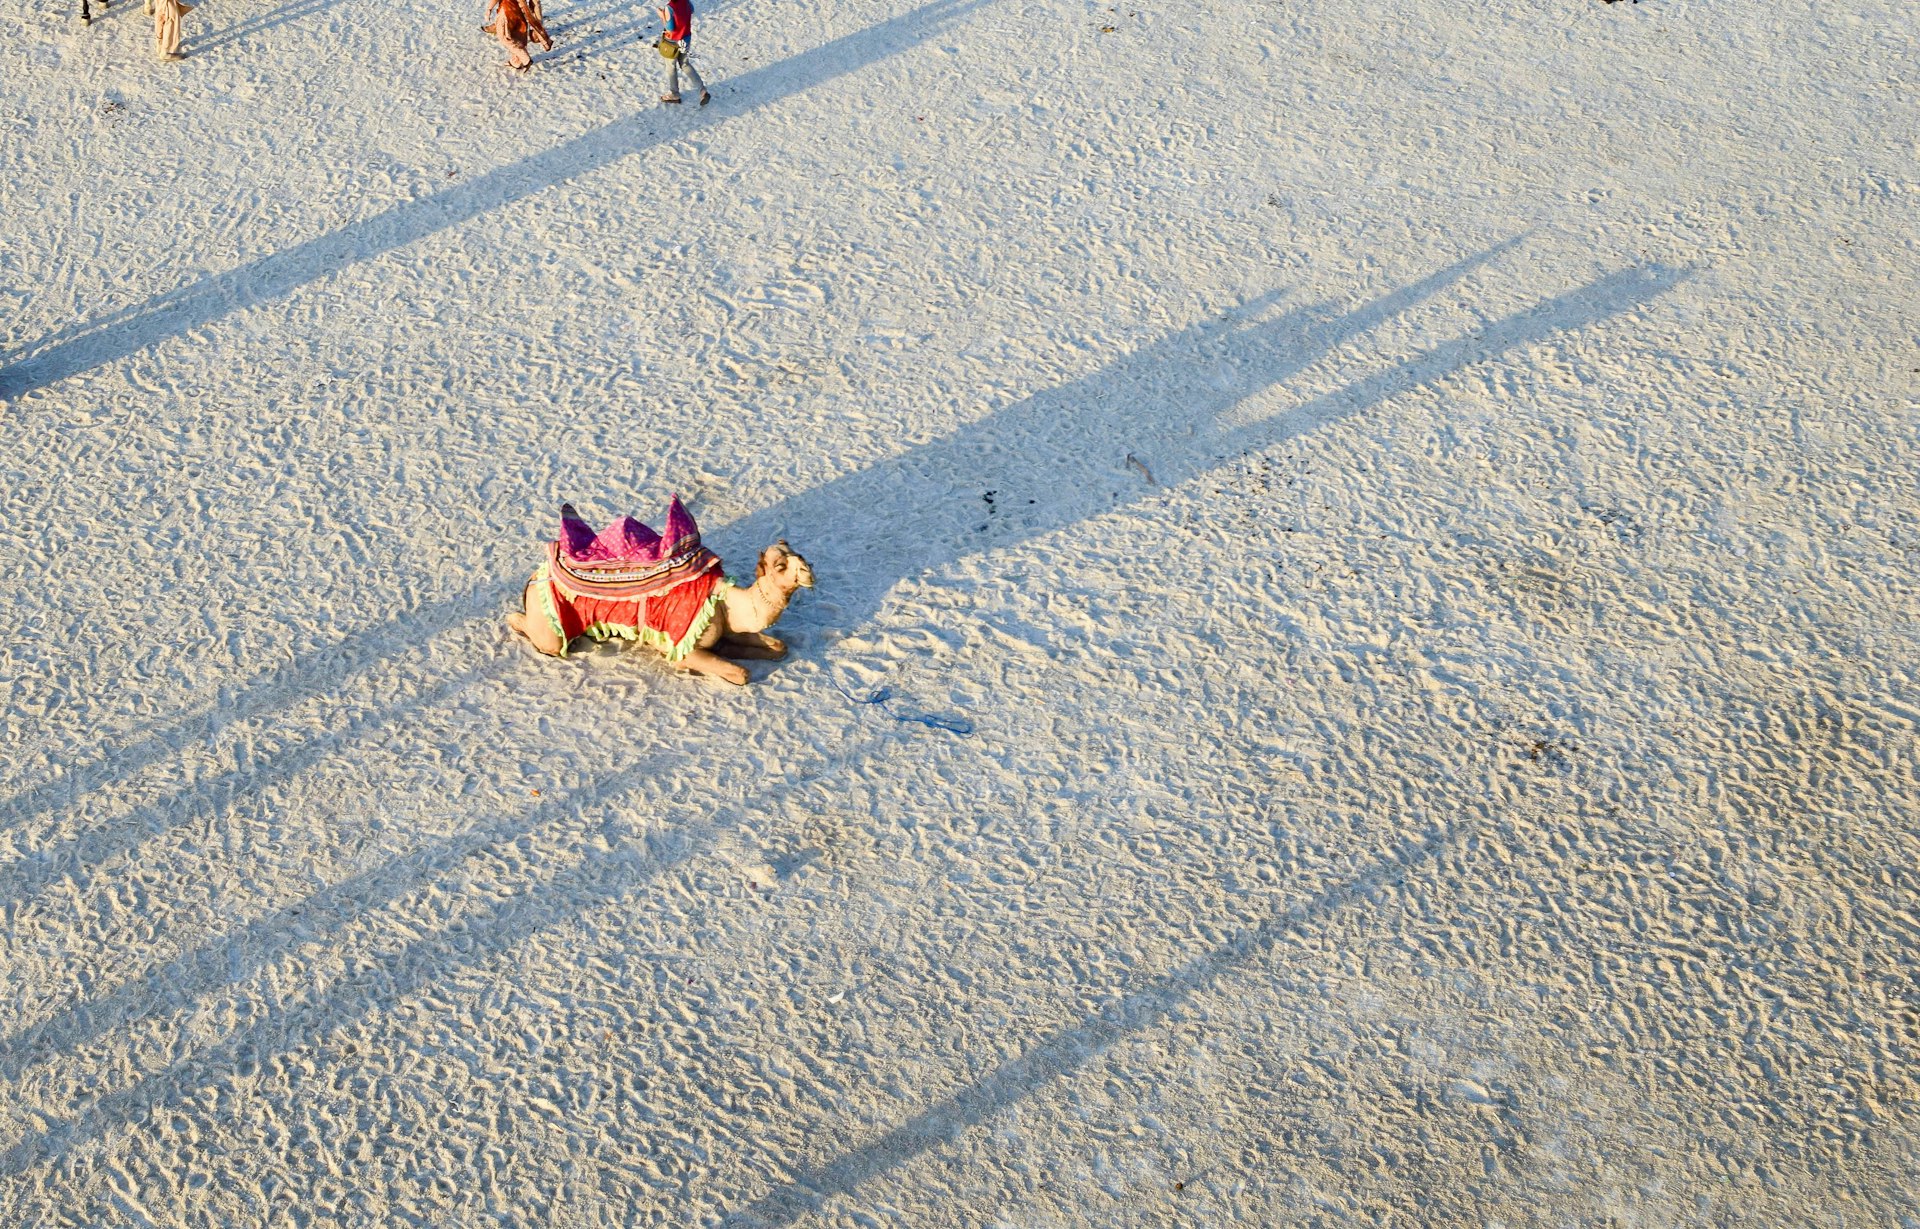 A camel sits in the Rann of Kachchh salt desert, Gujarat, India